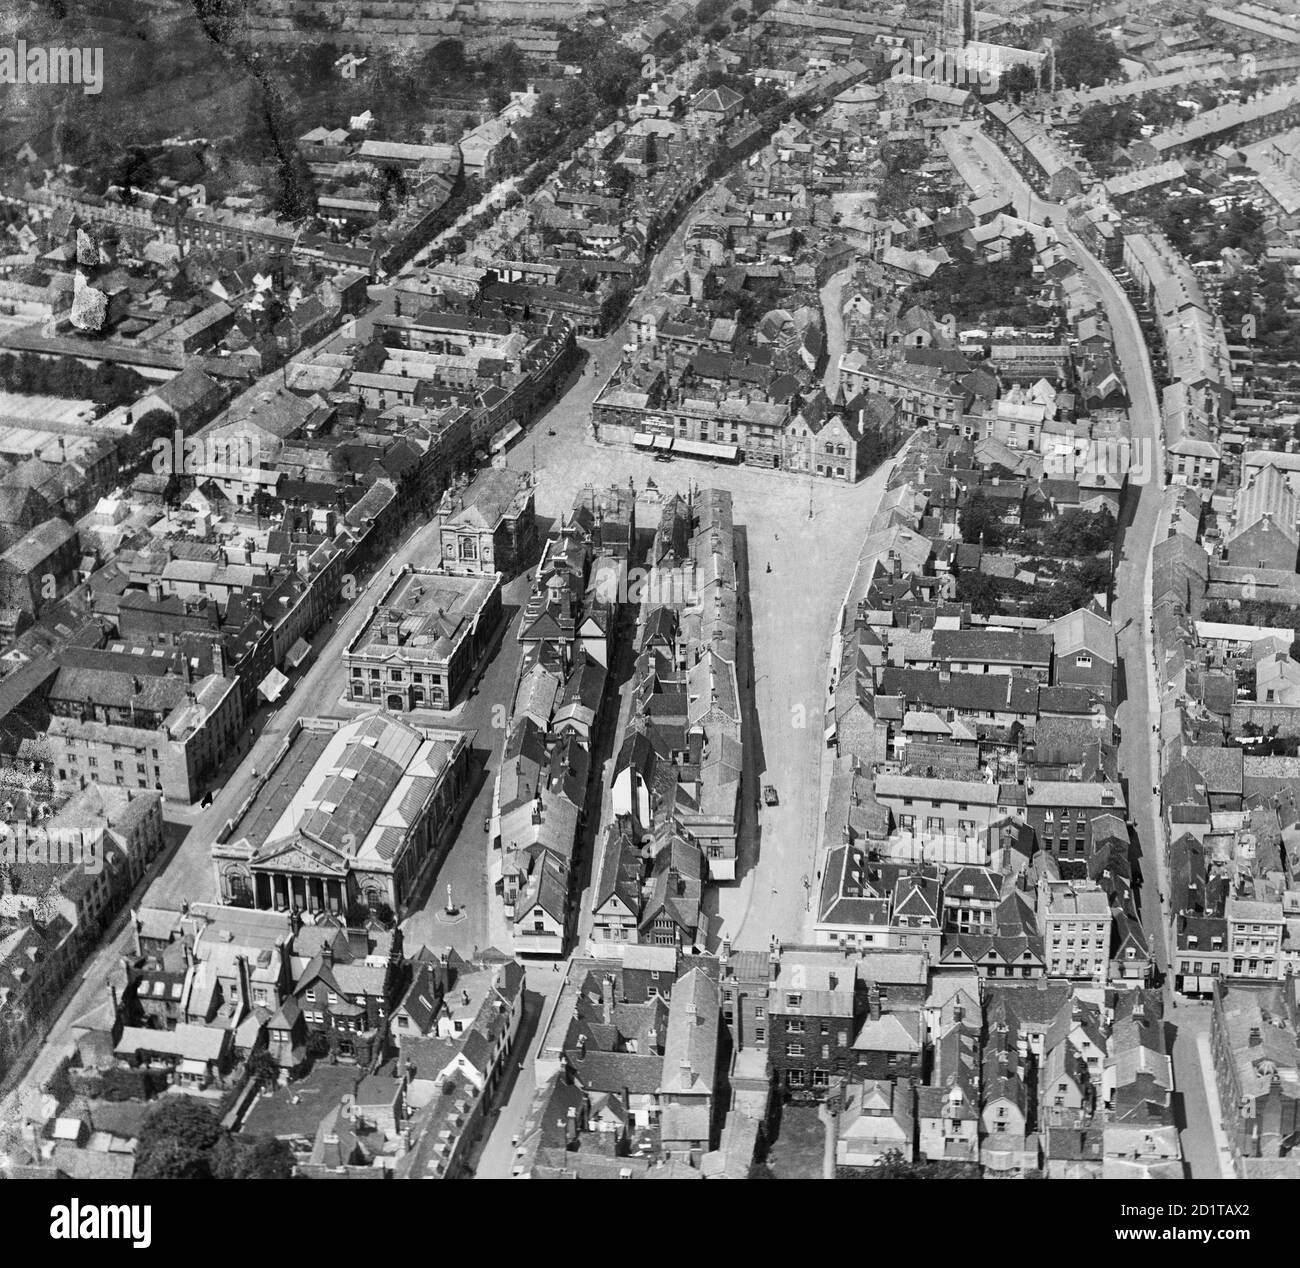 BURY ST EDMUNDS, SUFFOLK. Veduta aerea del mercato, Bury St Edmunds. Fotografato nel giugno 1920. Aerofilms Collection (vedi link). Foto Stock